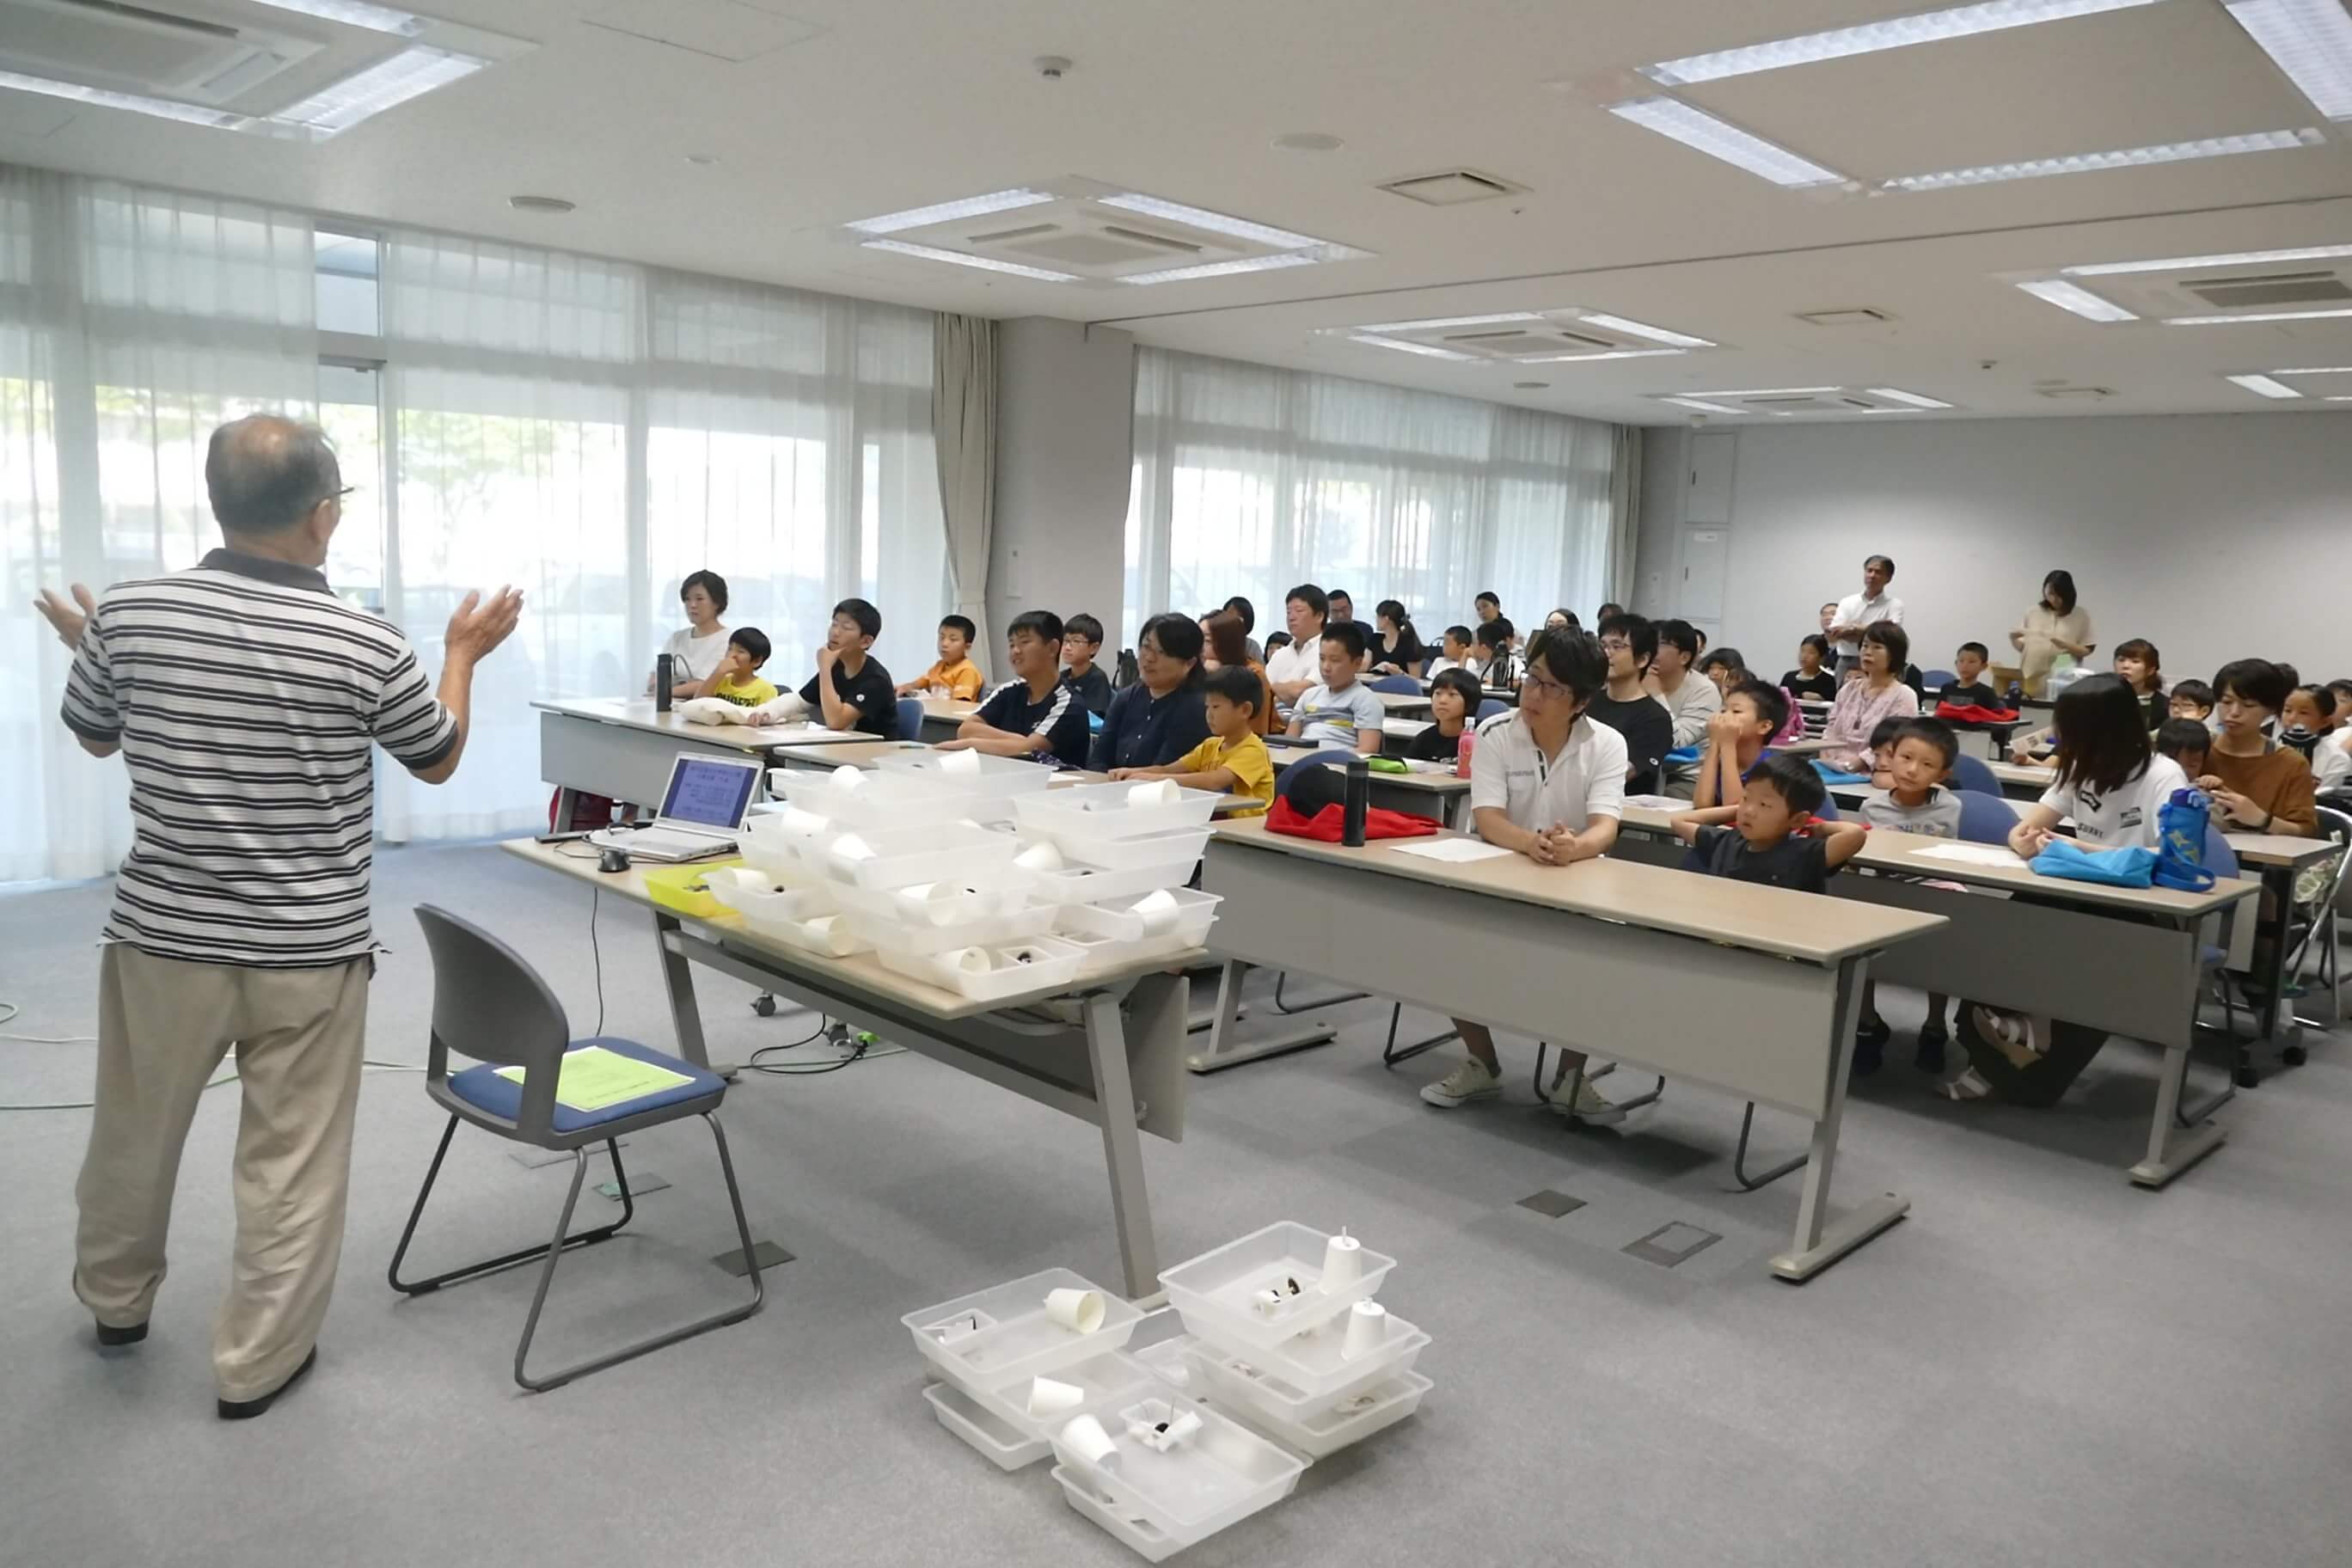 小学生向け発明工作教室 一般社団法人 香川県発明協会